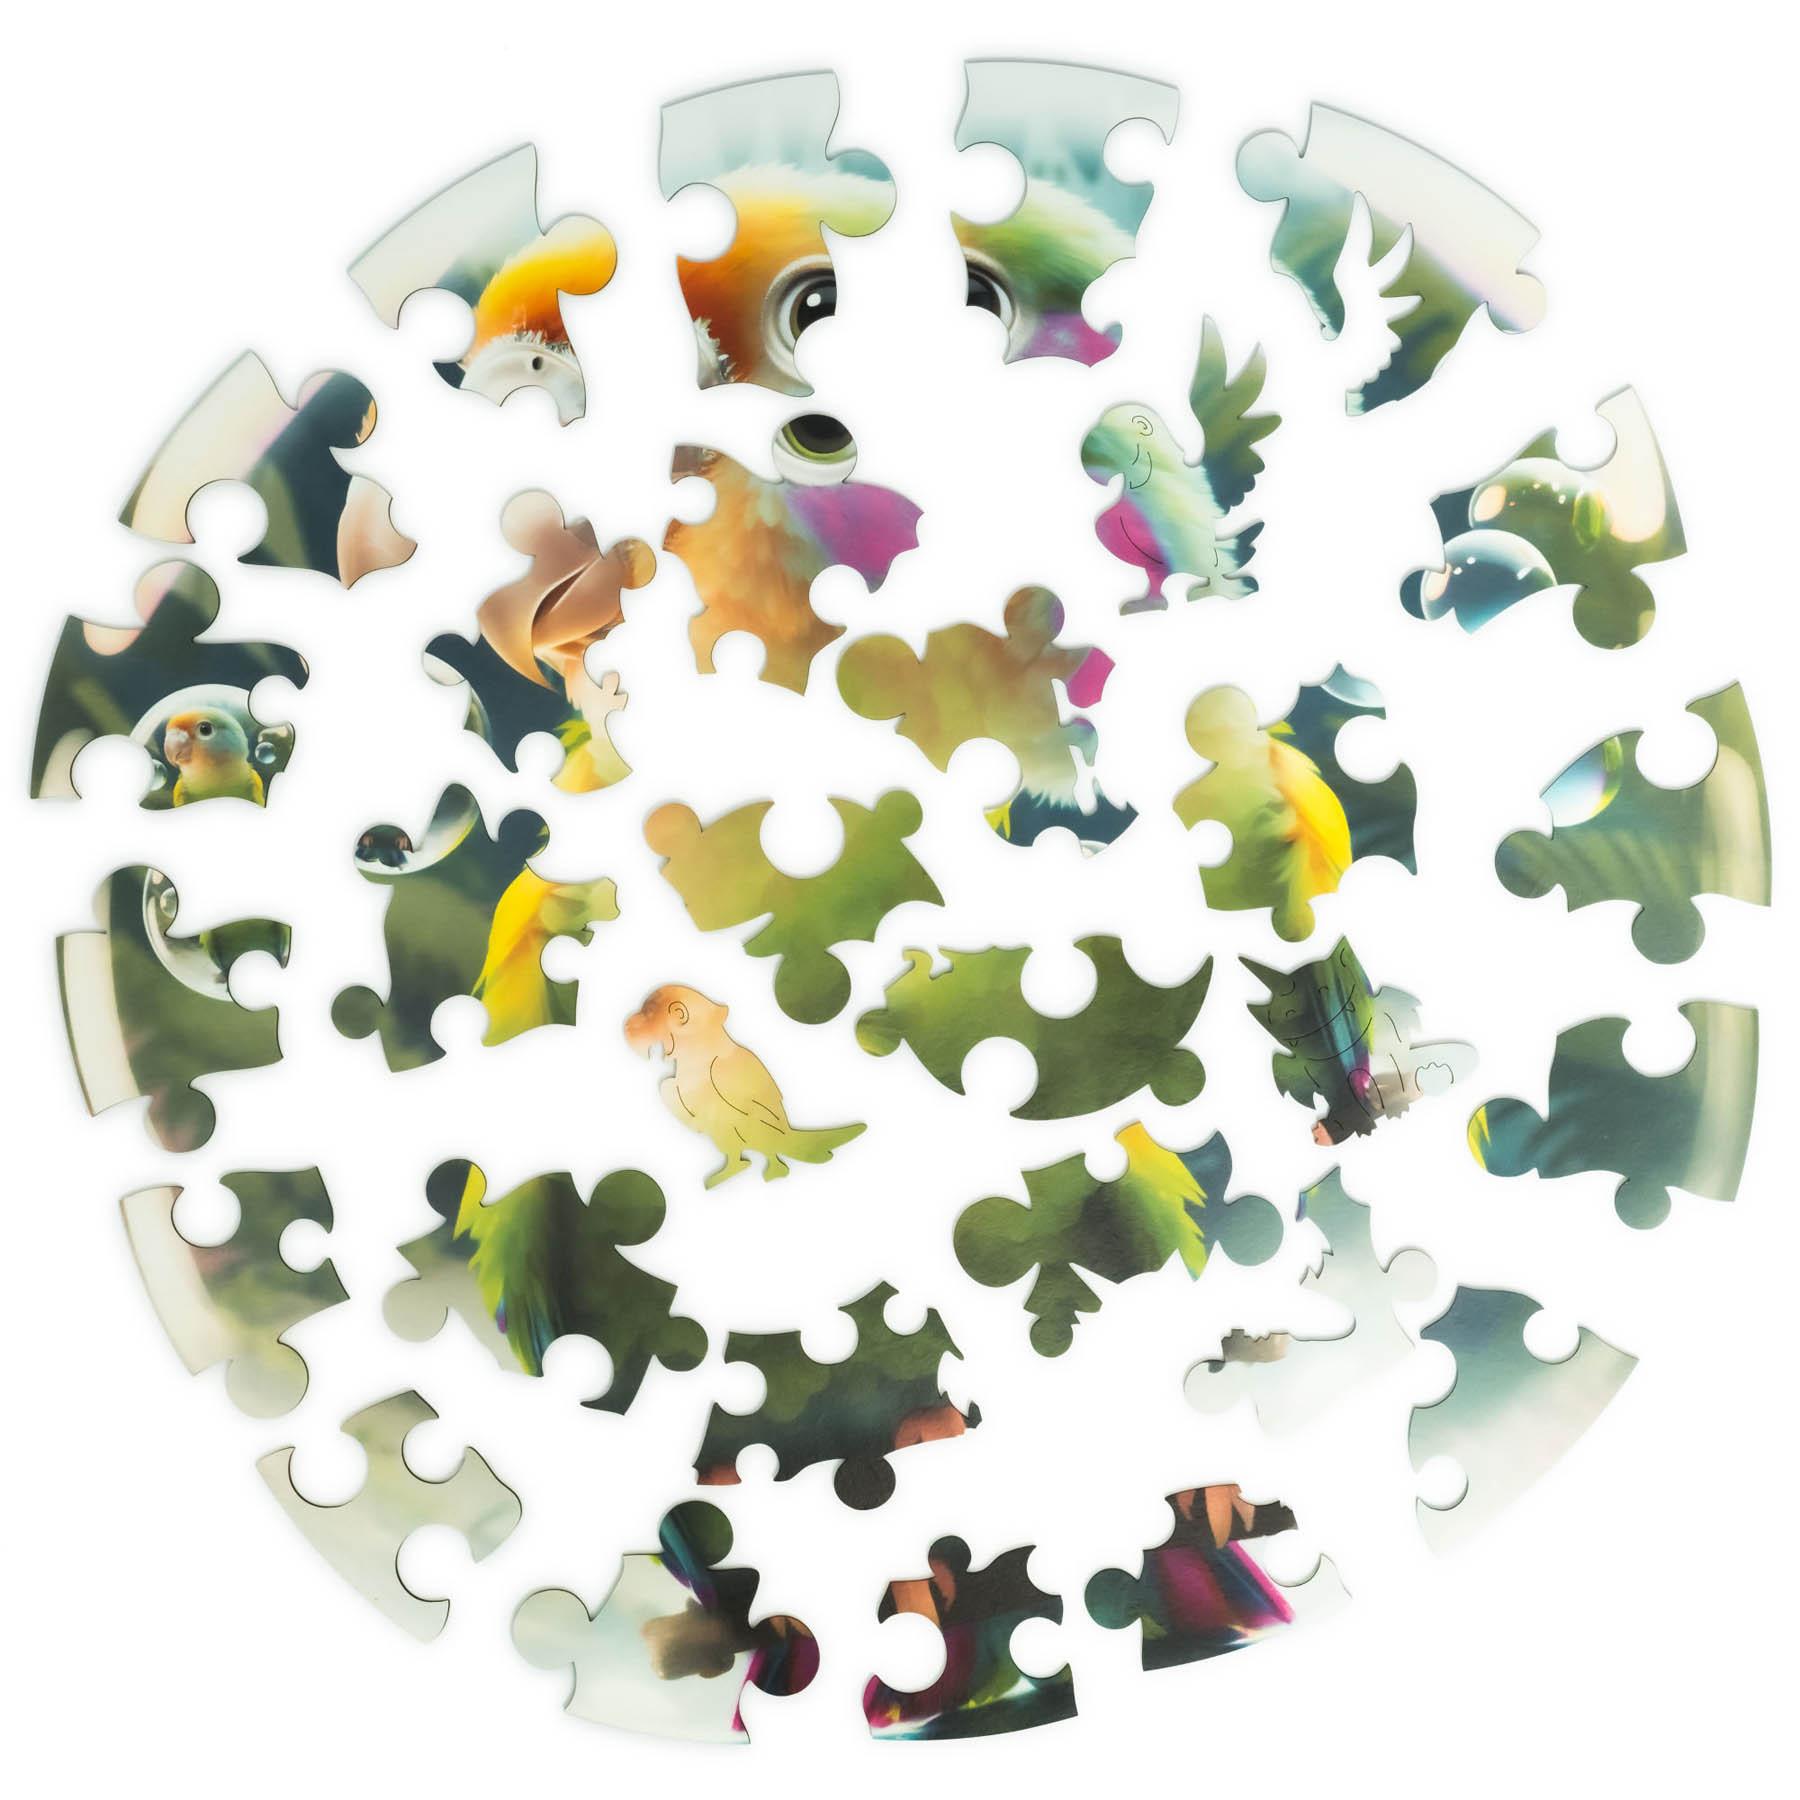 Unidragon  Bubblezz perroquet (30 pièces) - Puzzle en bois pour enfants 